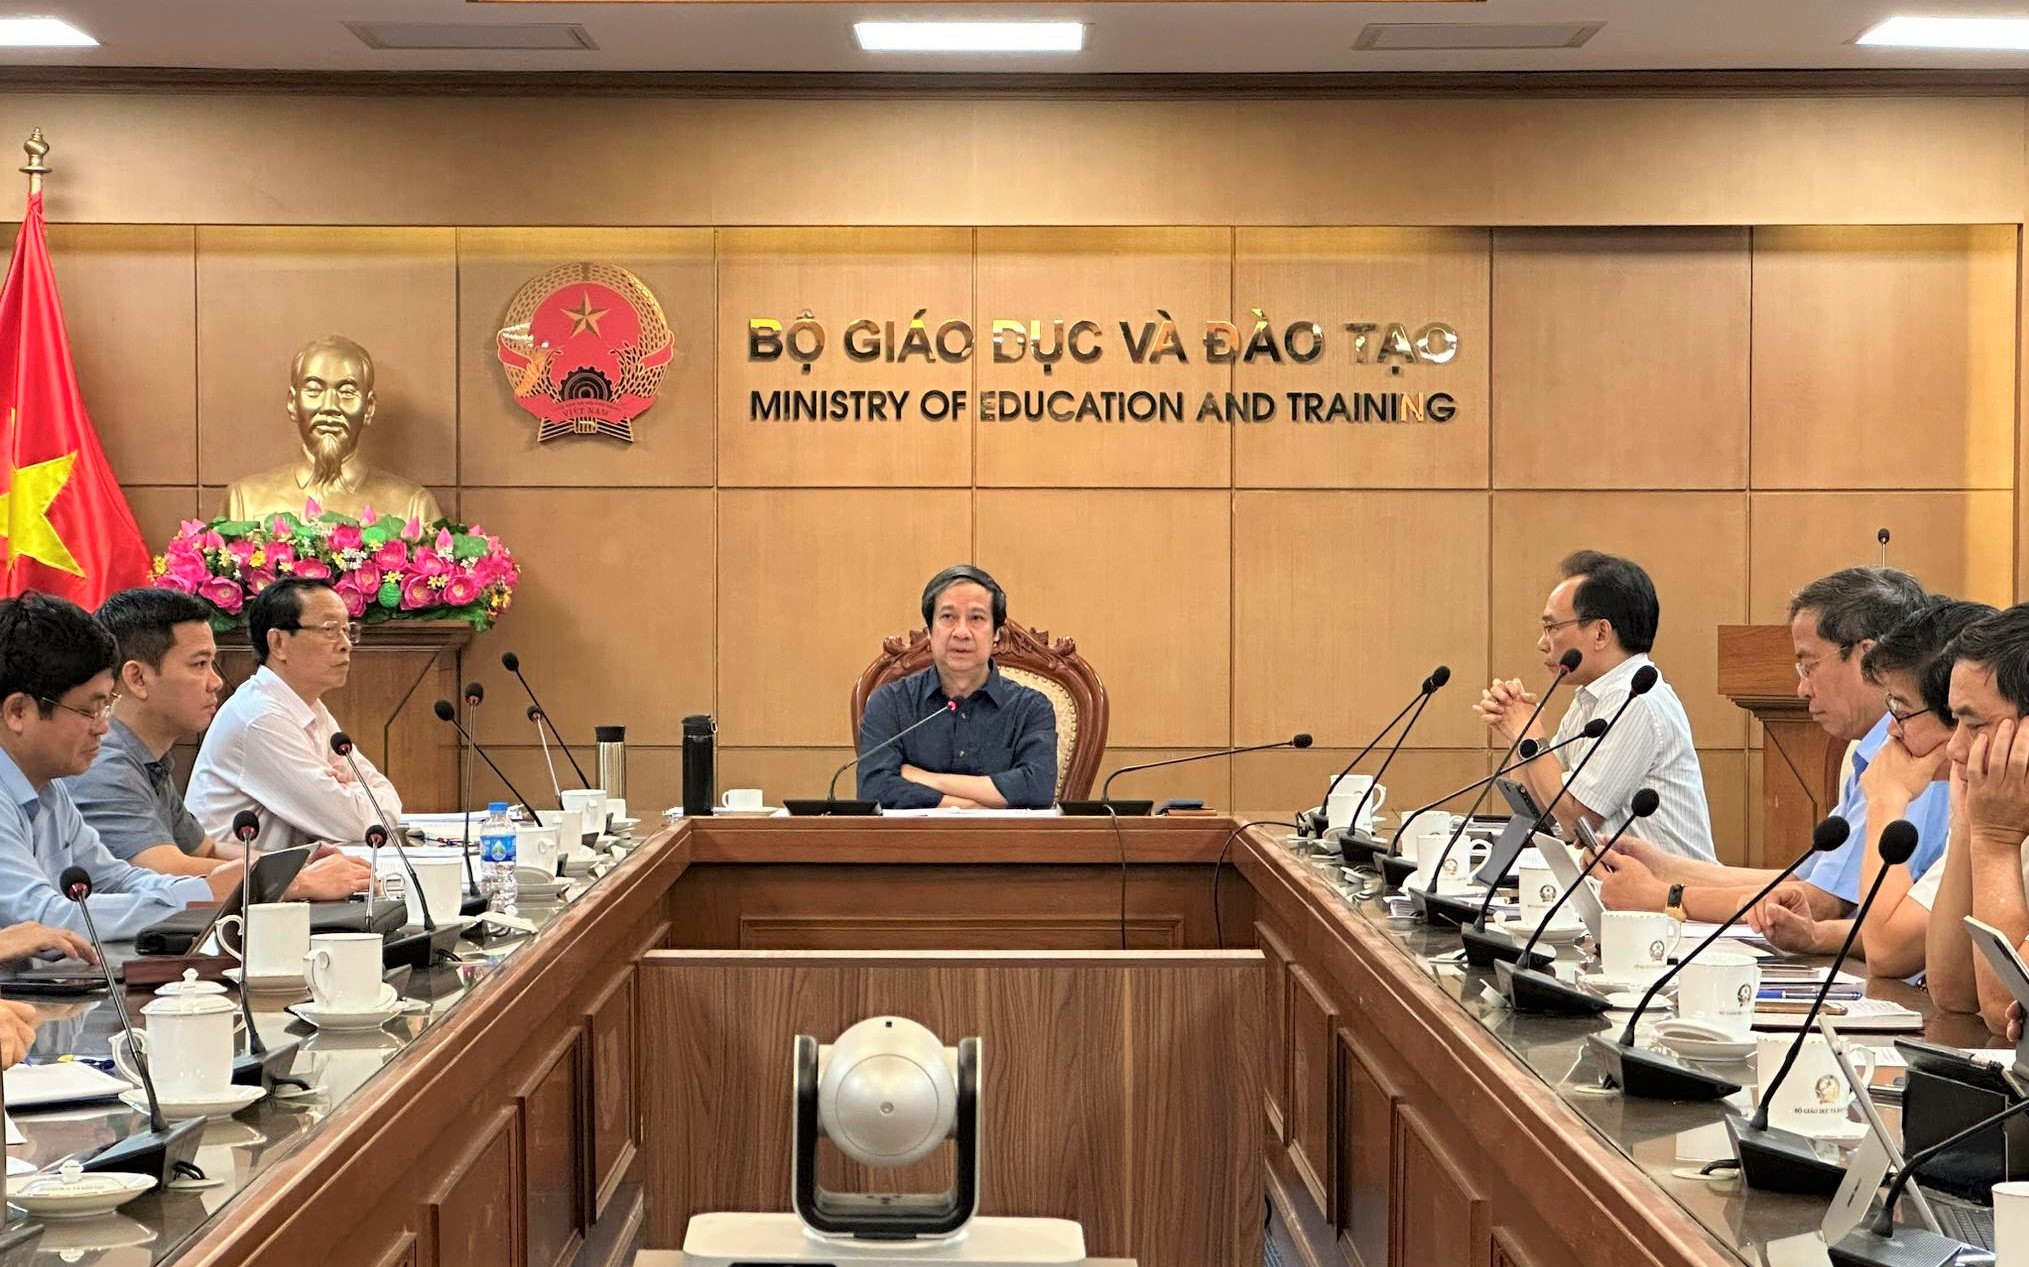 Bộ trưởng Bộ GD&ĐT Nguyễn Kim Sơn chủ trì cuộc họp.